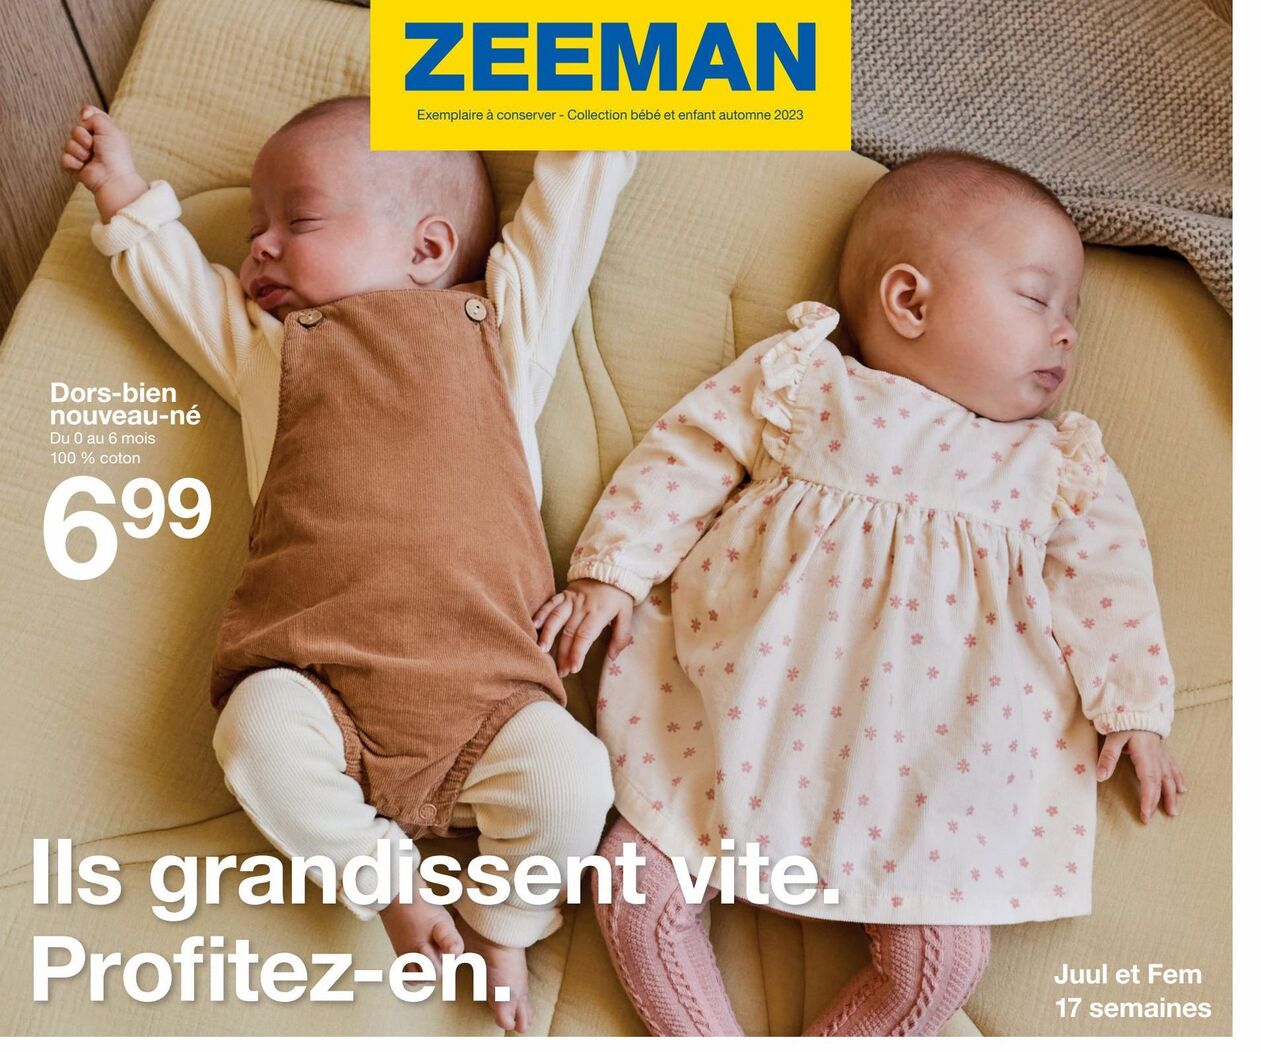 Dors-bien nouveau-né offre à 6,99€ sur Zeeman